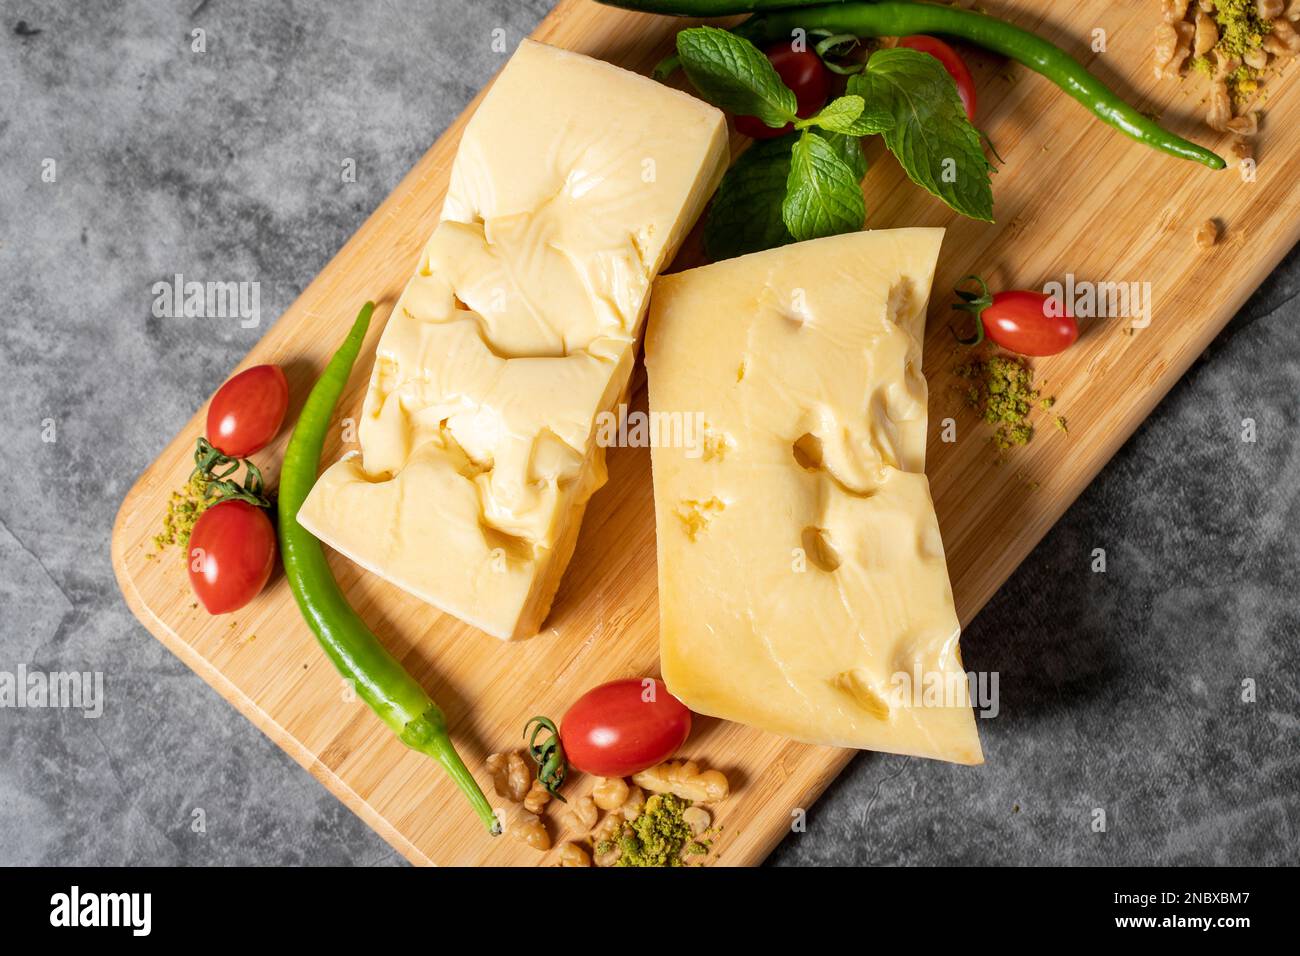 Fromage Gruyère. Morceau de fromage Gruyere sur planche à découper en bois. Collection de fromages. Vue de dessus Banque D'Images